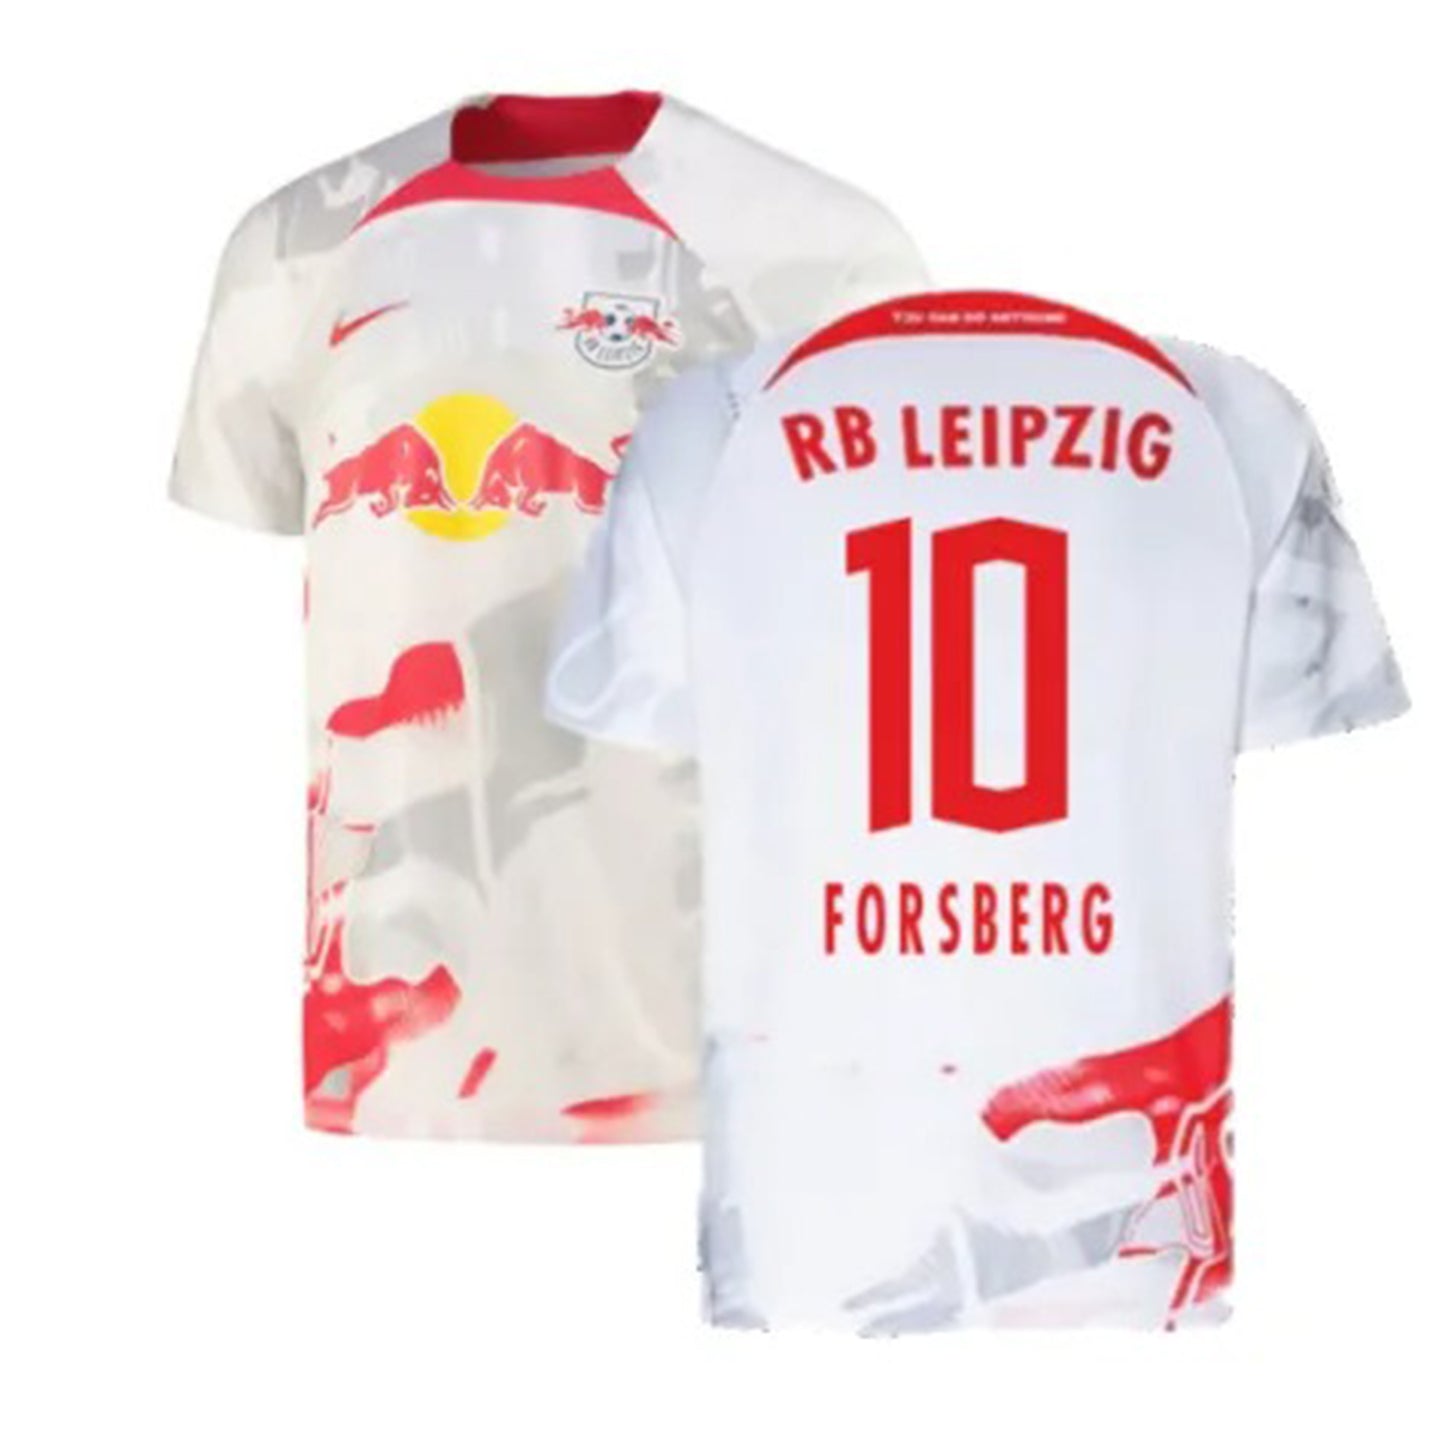 Emil Forsberg RB Leipzig 10 Jersey